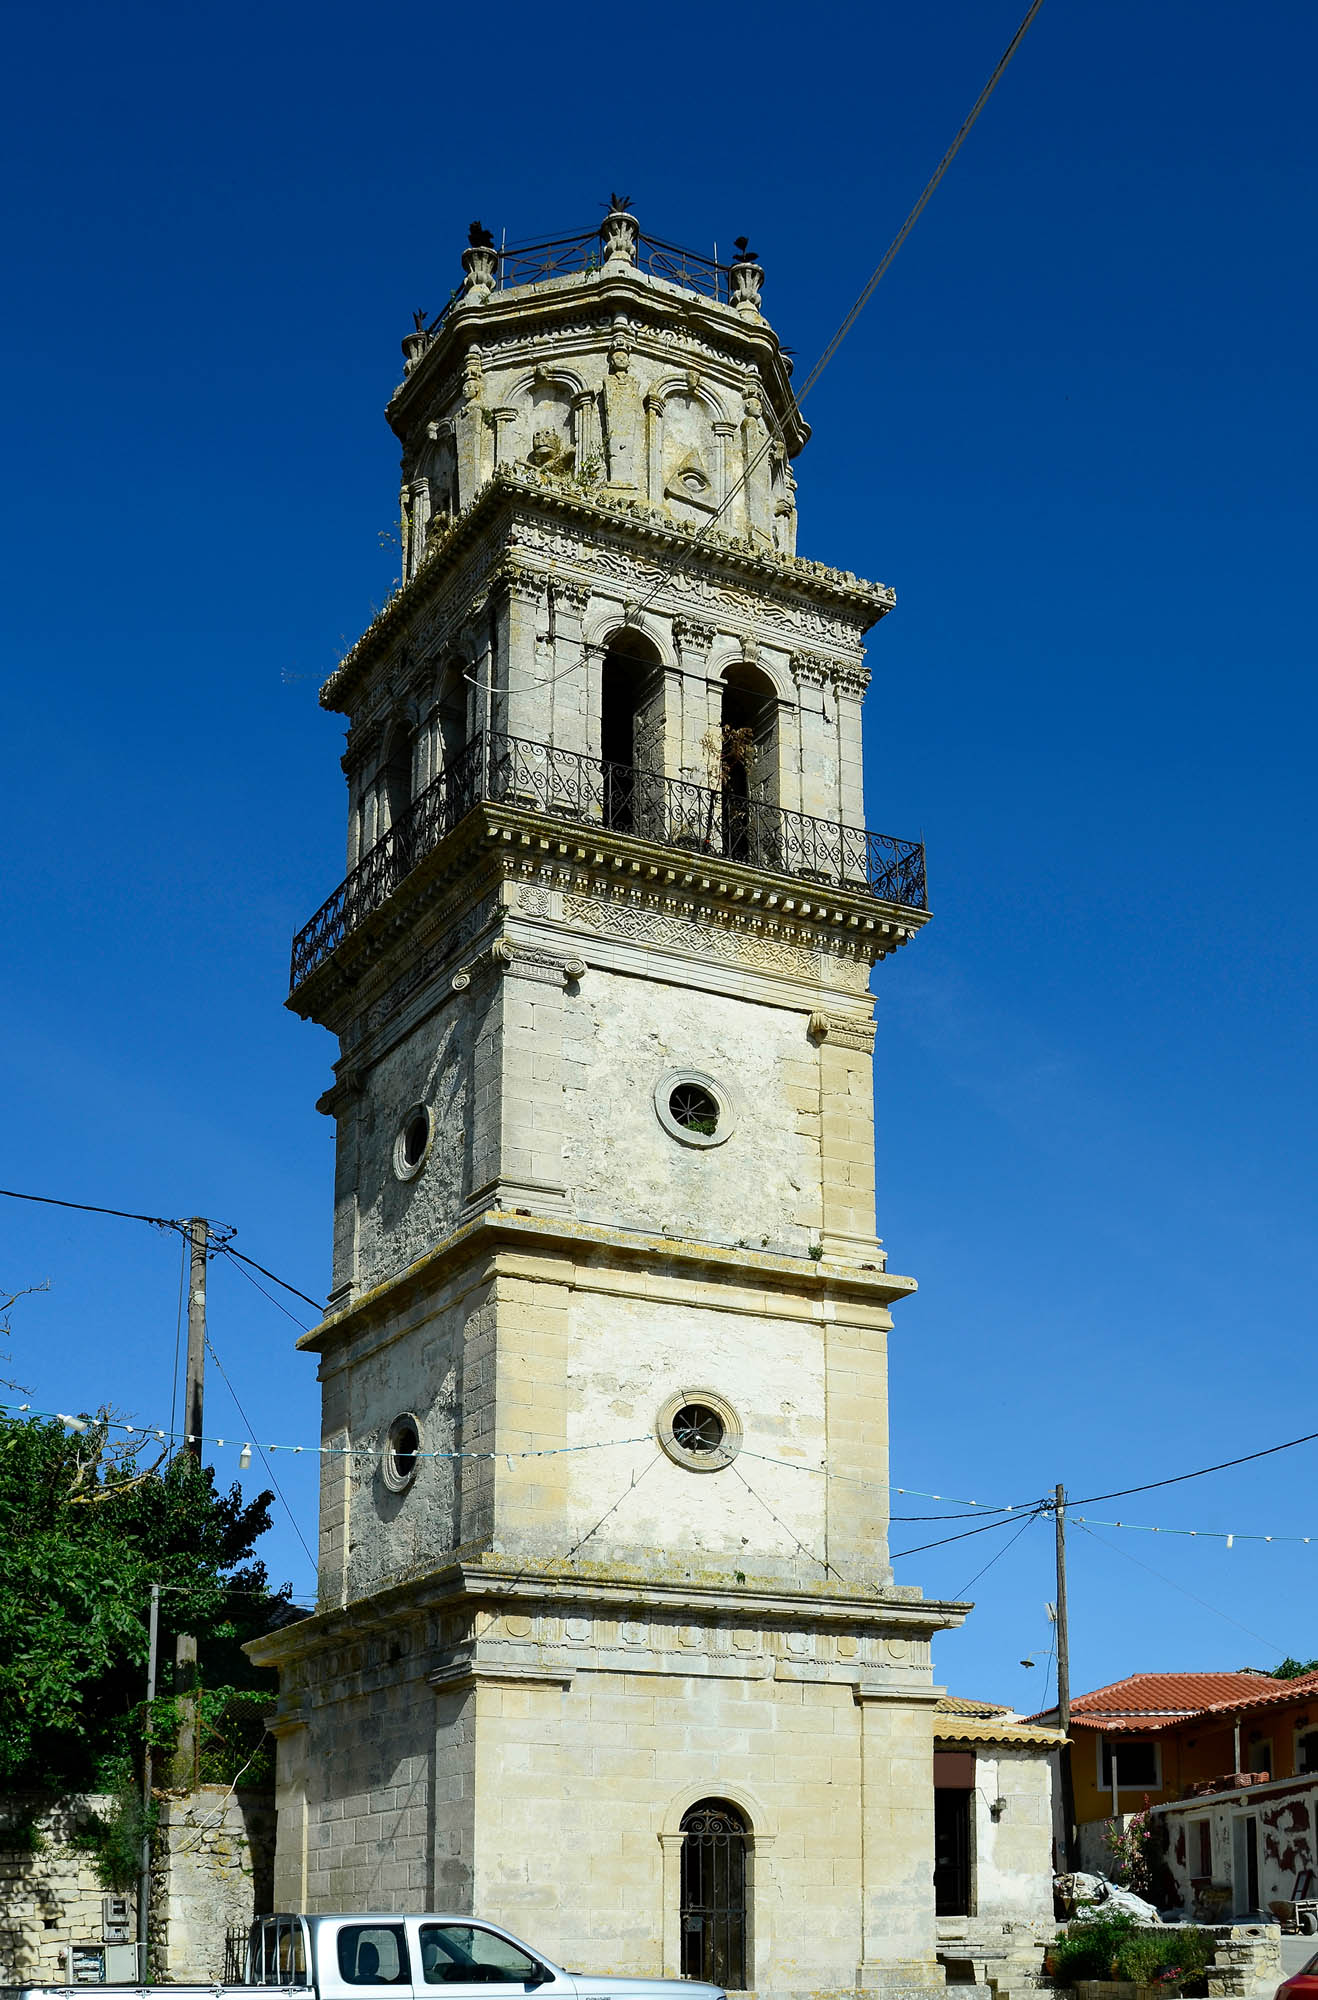 Wieża z symbolami masońskimi